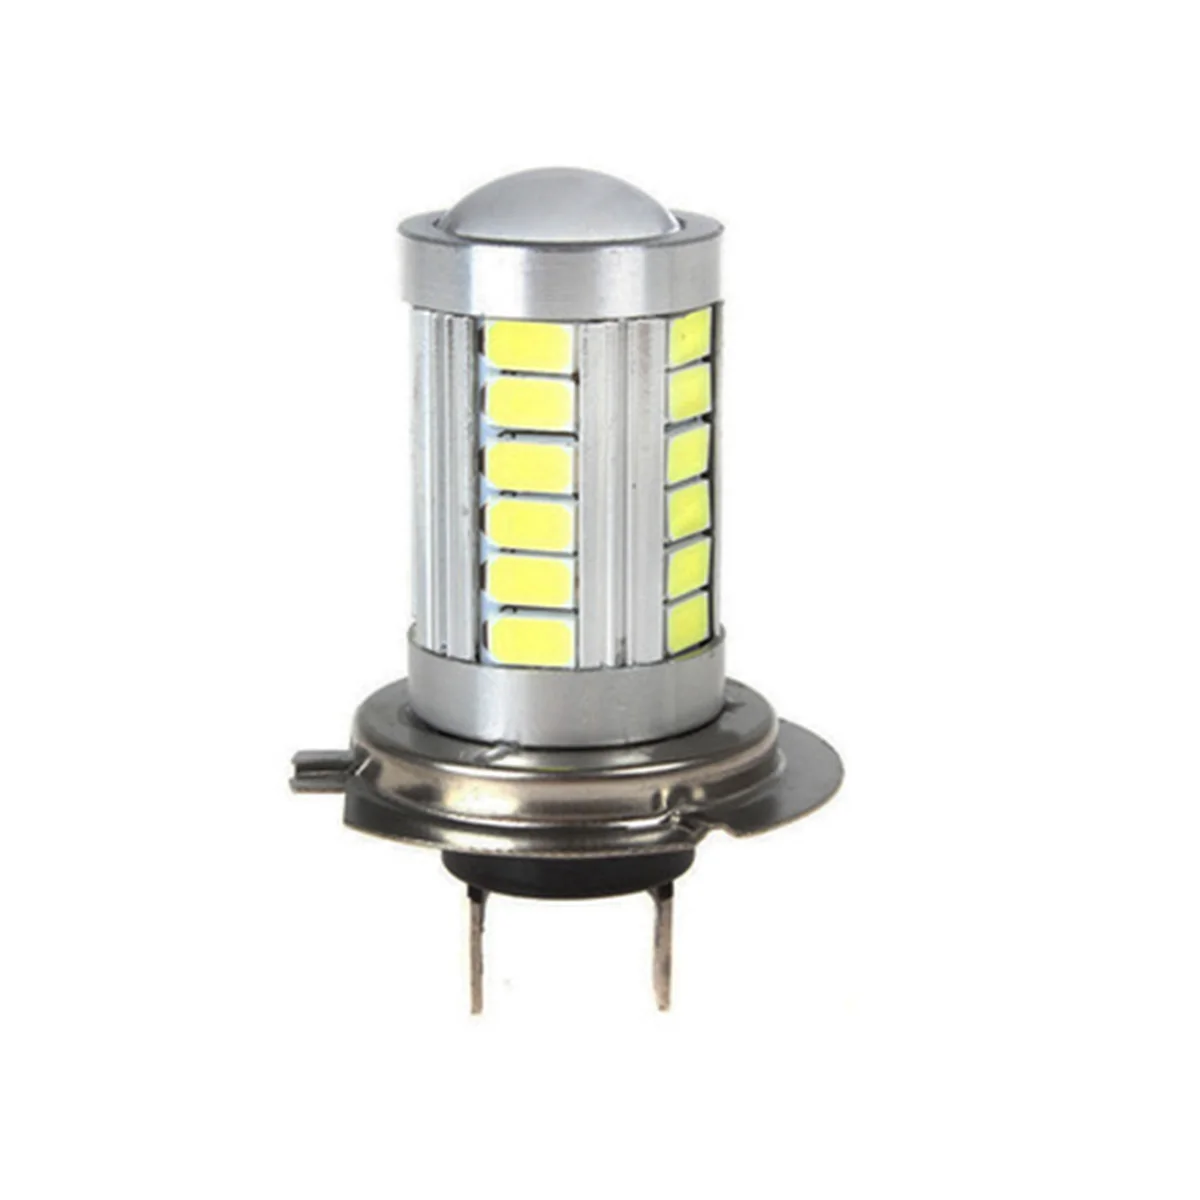 H7 6,6 Вт светодиодный фары лампы SMD 5630 33 светодиодный s 2500 K светодиодный фонарь желтый свет лампы Автомобильные фары